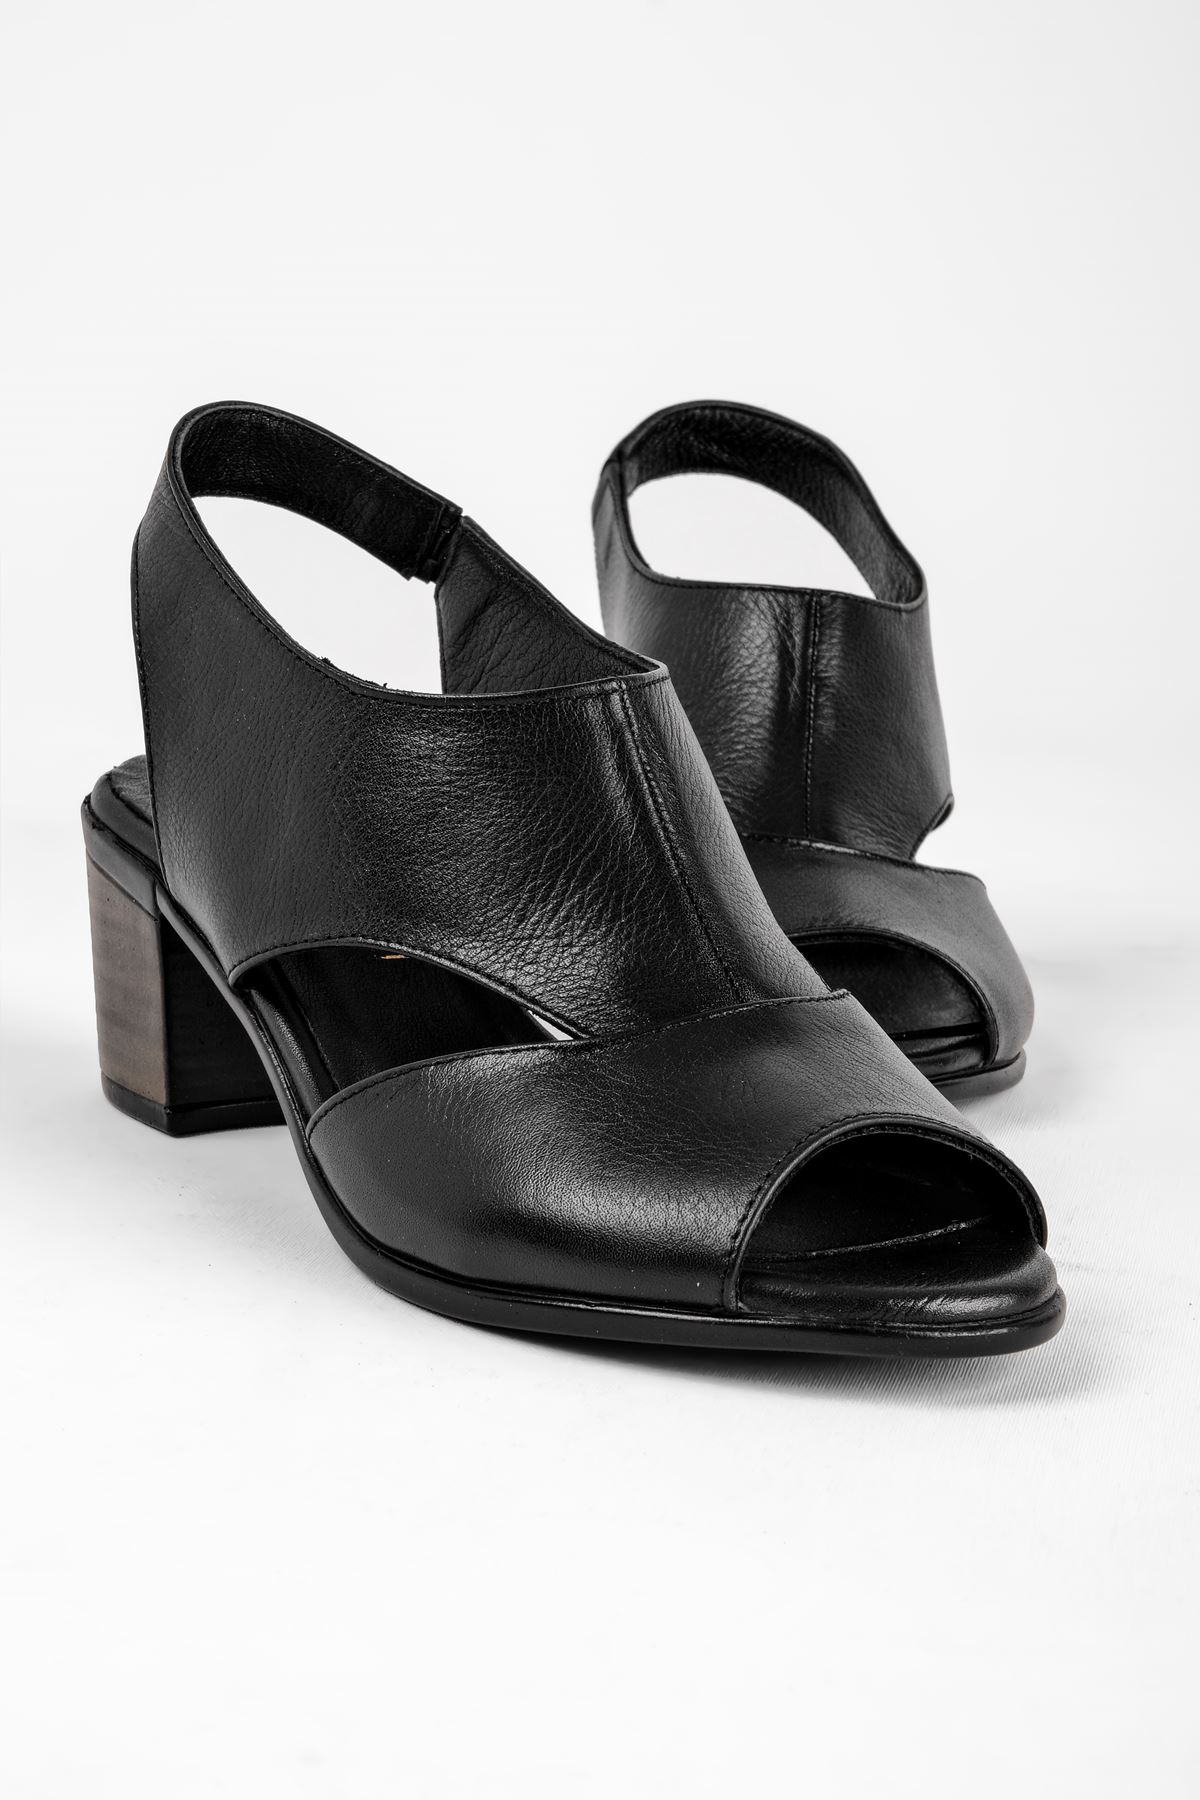 Breda Kadın Hakiki Deri Topuklu Ayakkabı-siyah